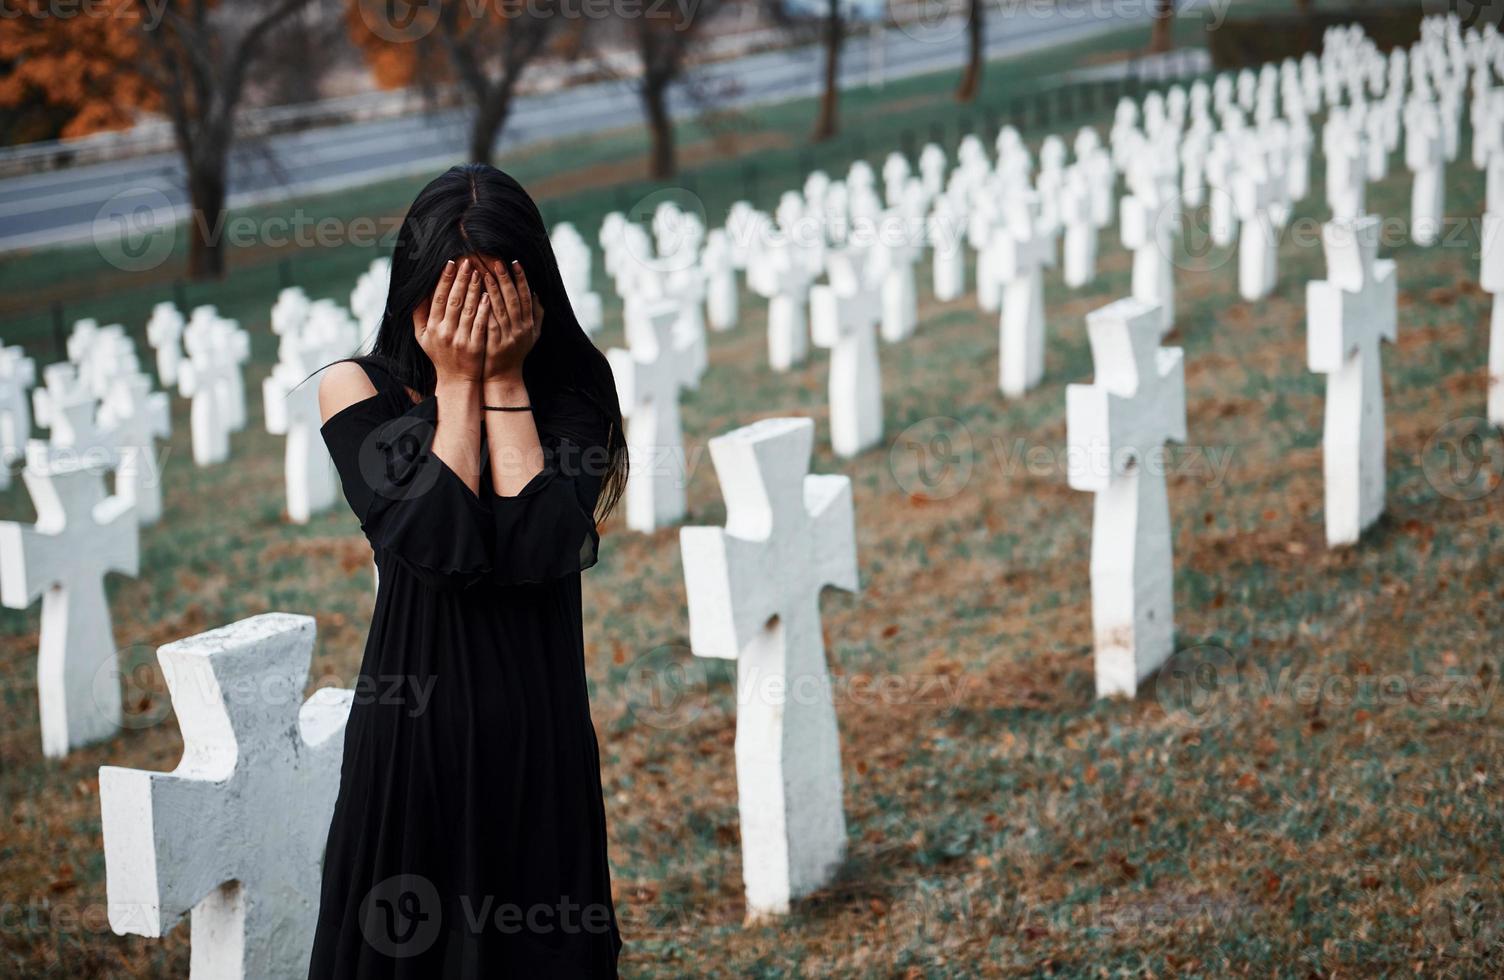 ung kvinna i svart kläder besöker kyrkogård med många vit går över. uppfattning av begravning och död foto